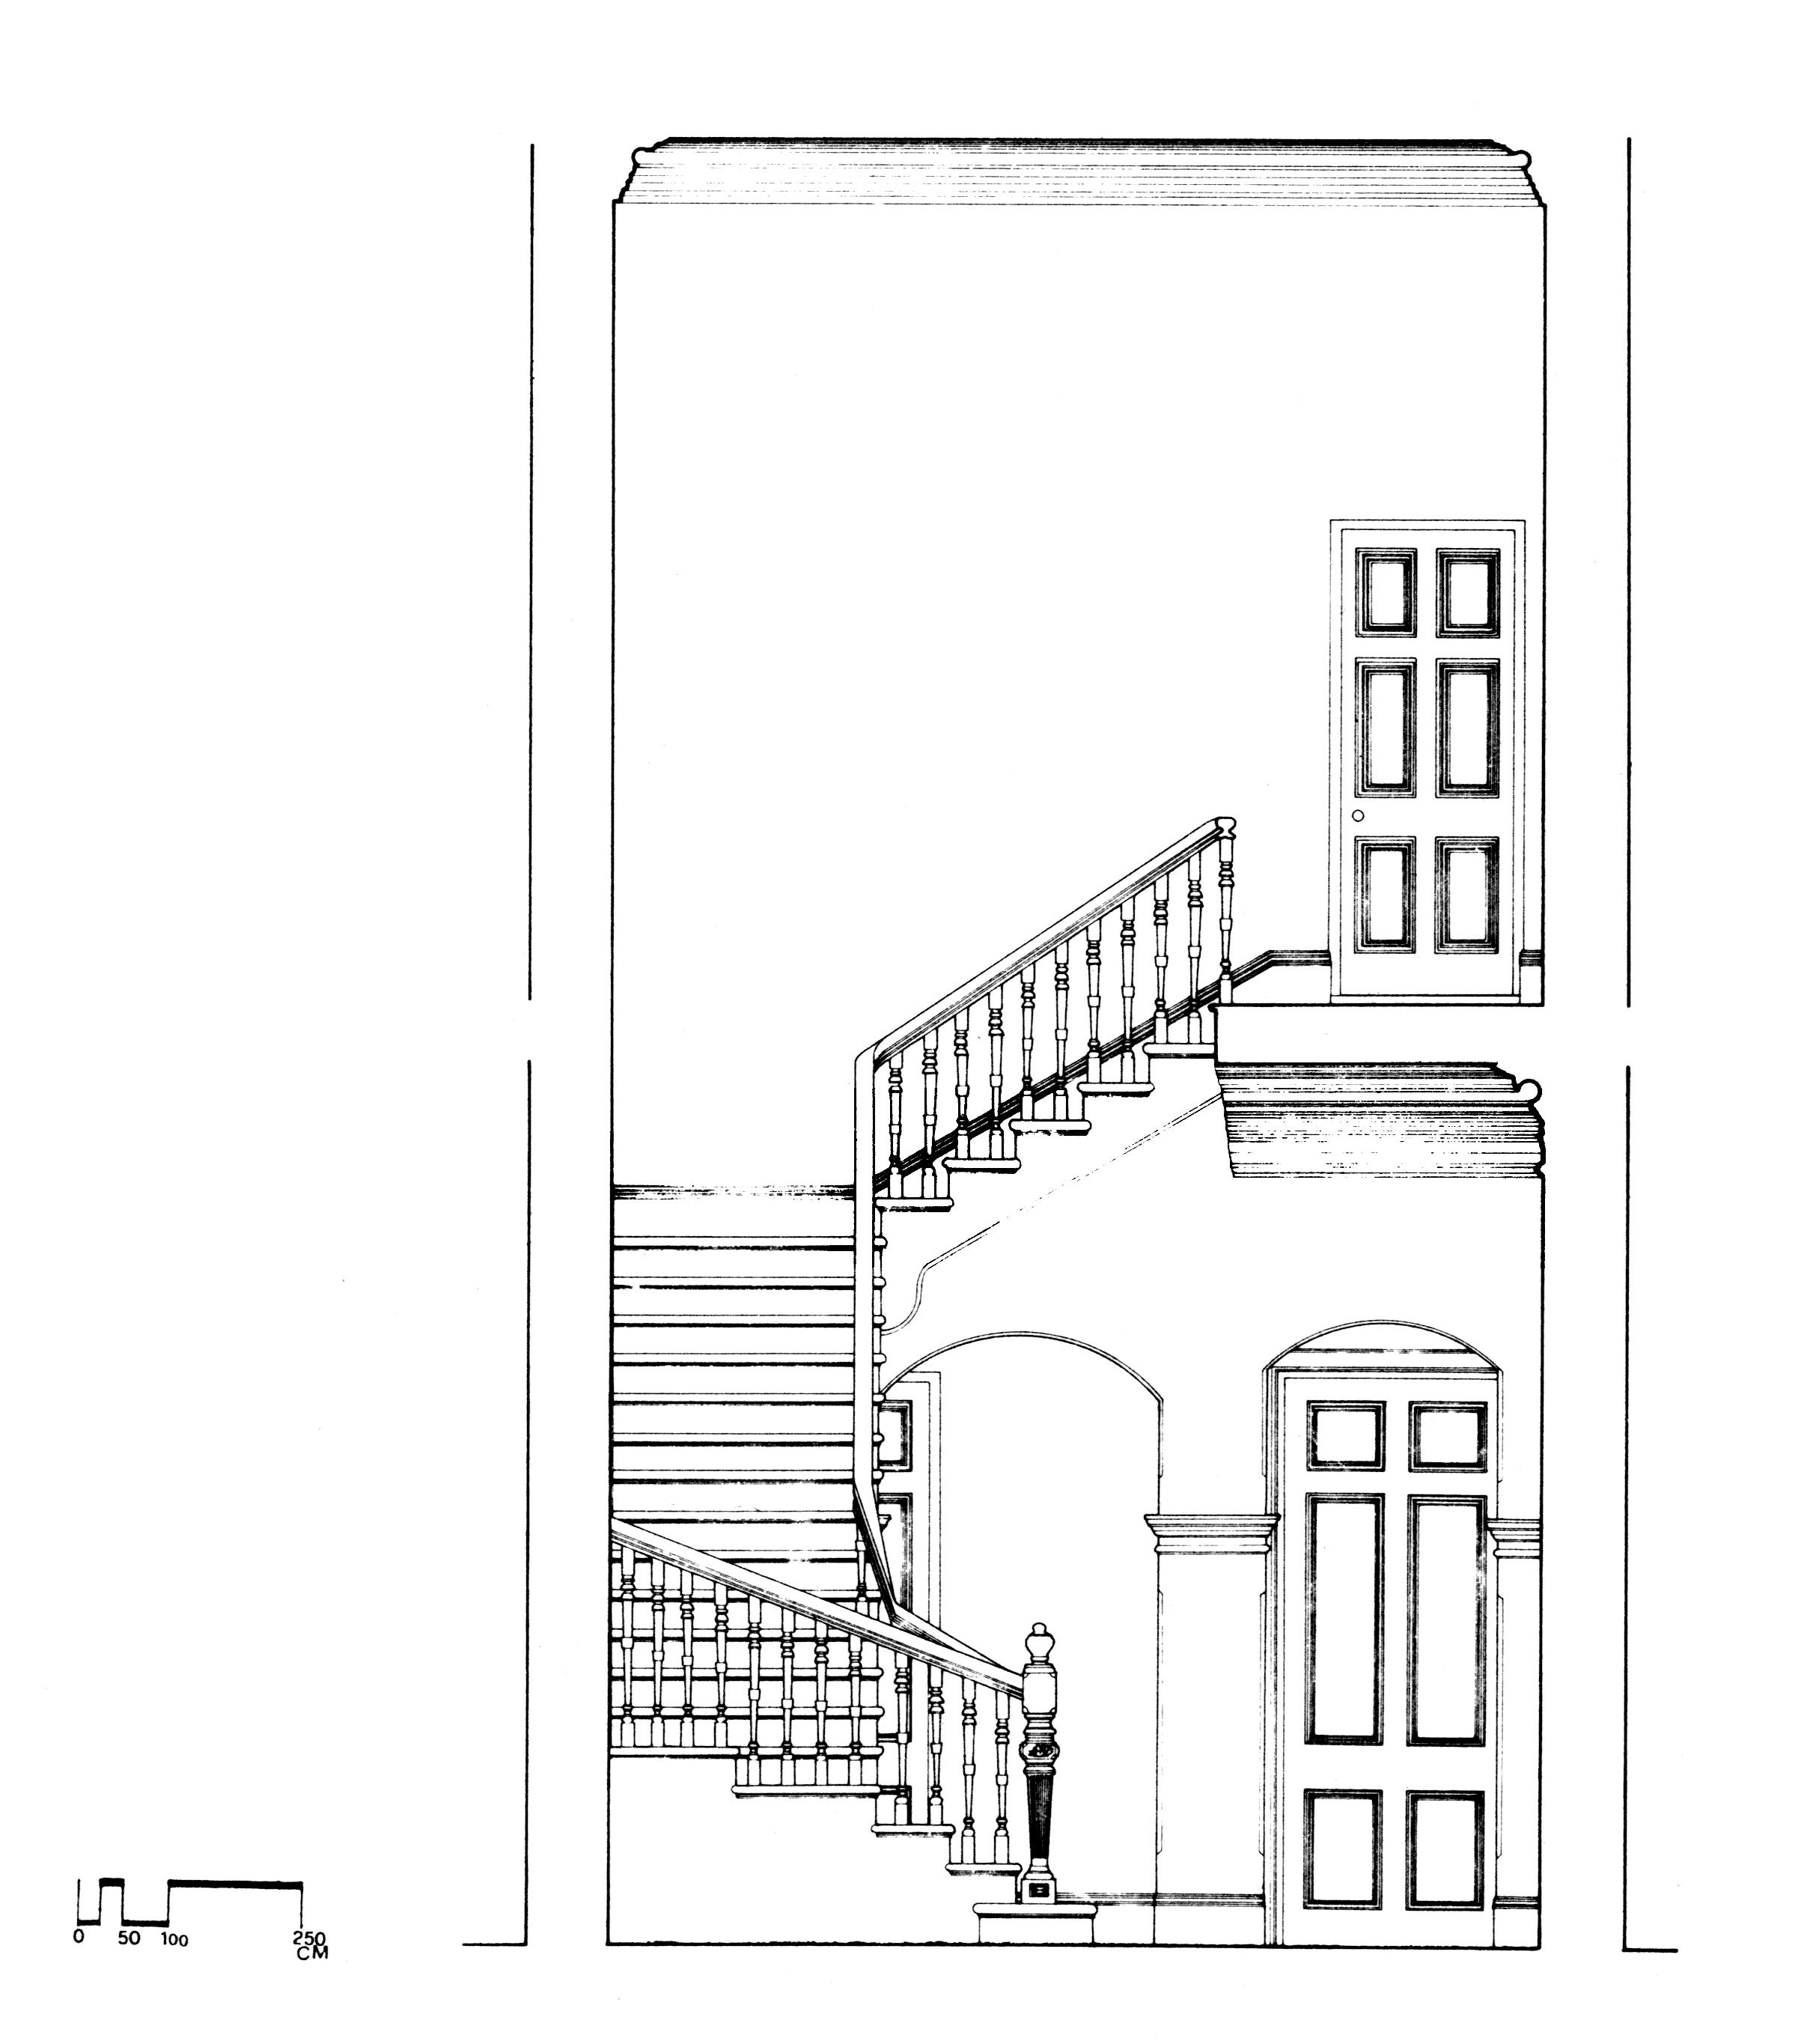 紅毛城圖片檔:英領事住宅主樓梯橫向剖面圖